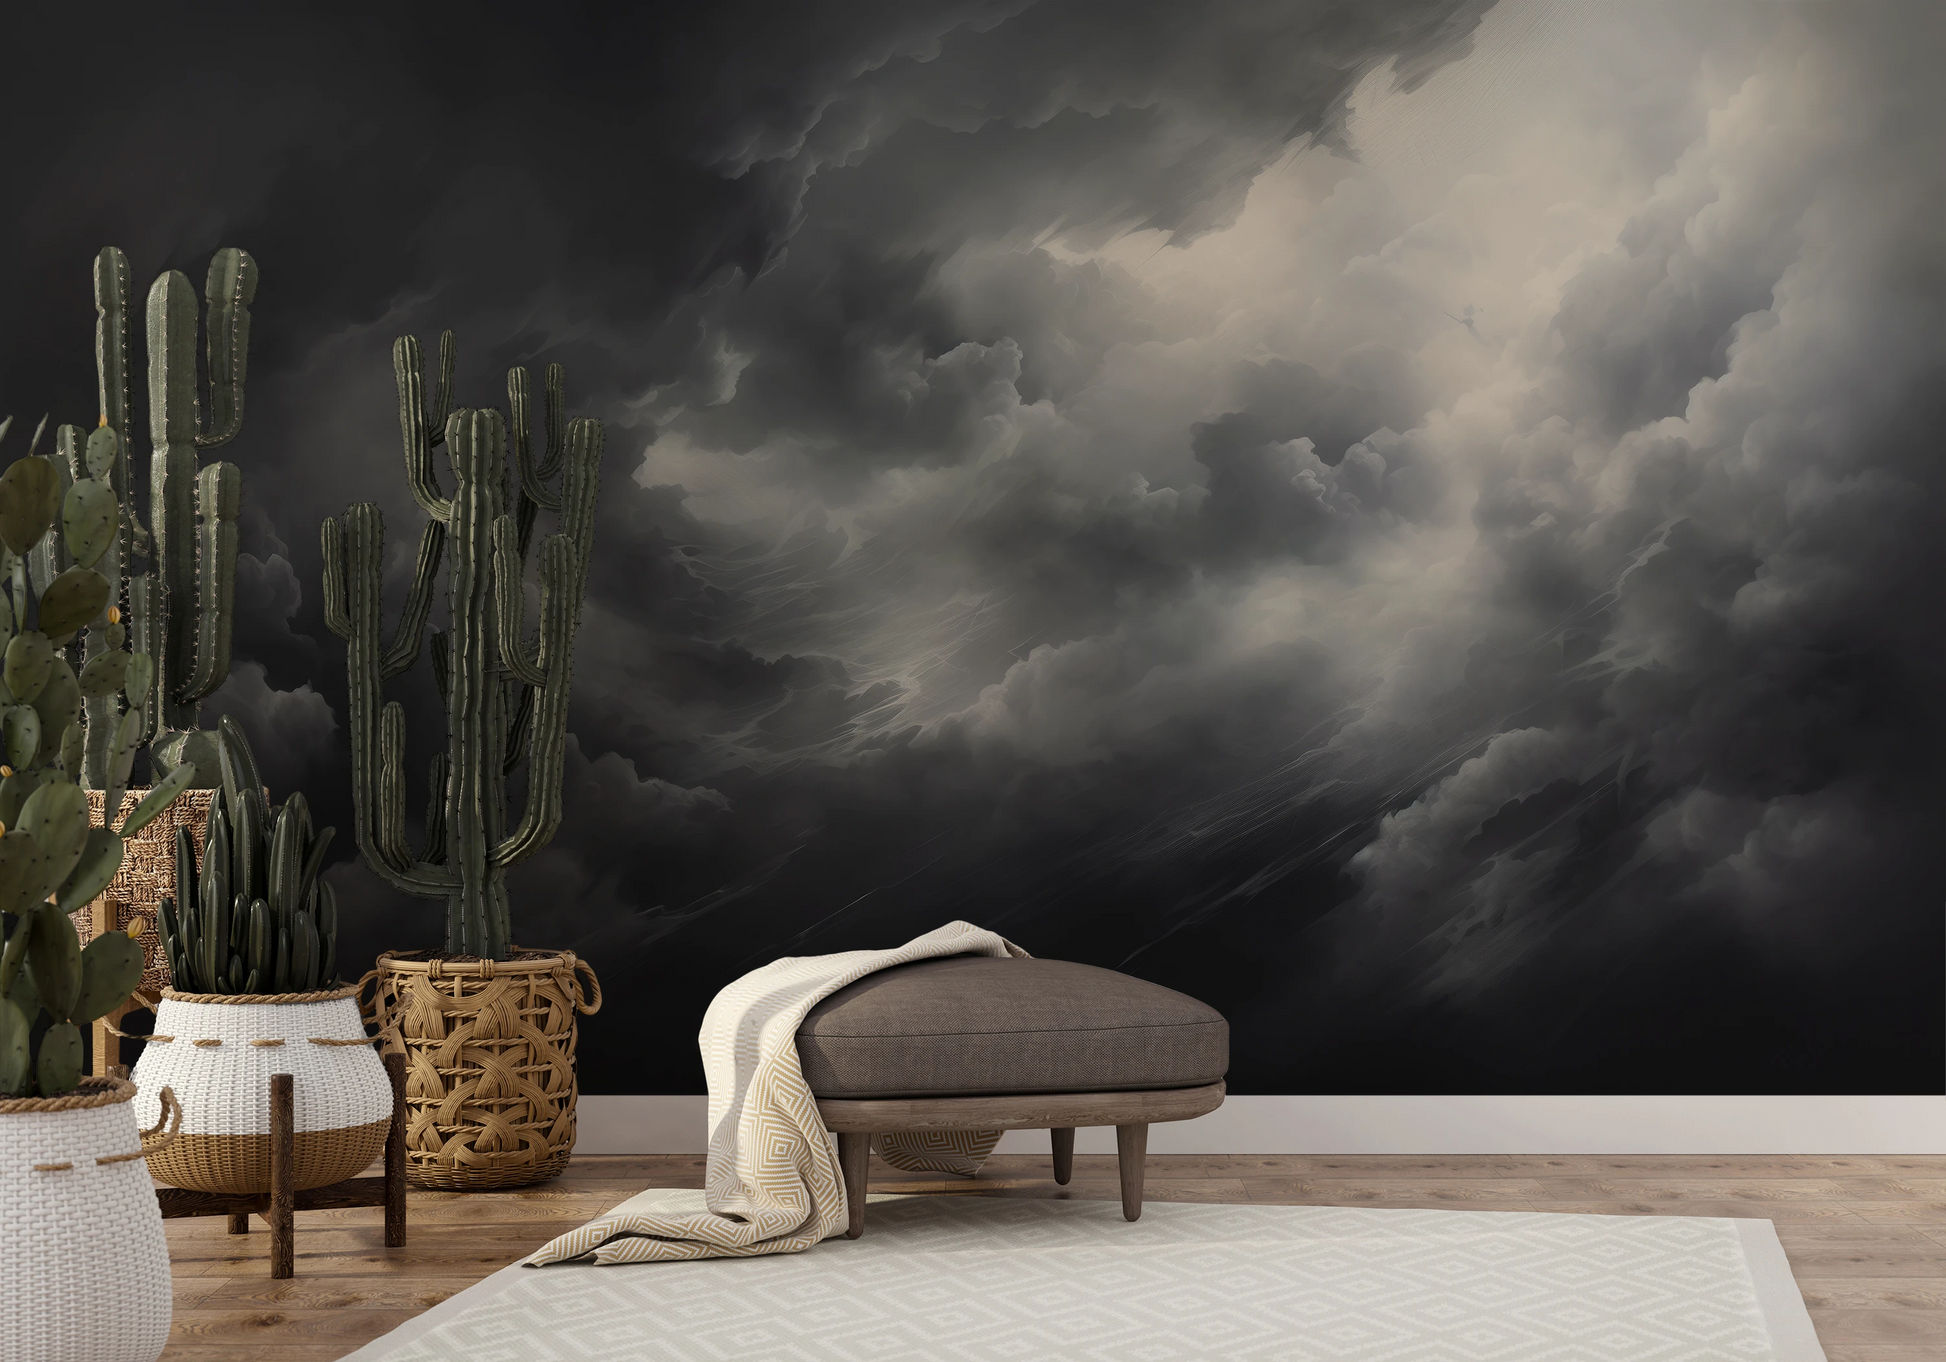 Fototapeta malowana o nazwie Storm's Crescendo pokazana w aranżacji wnętrza.